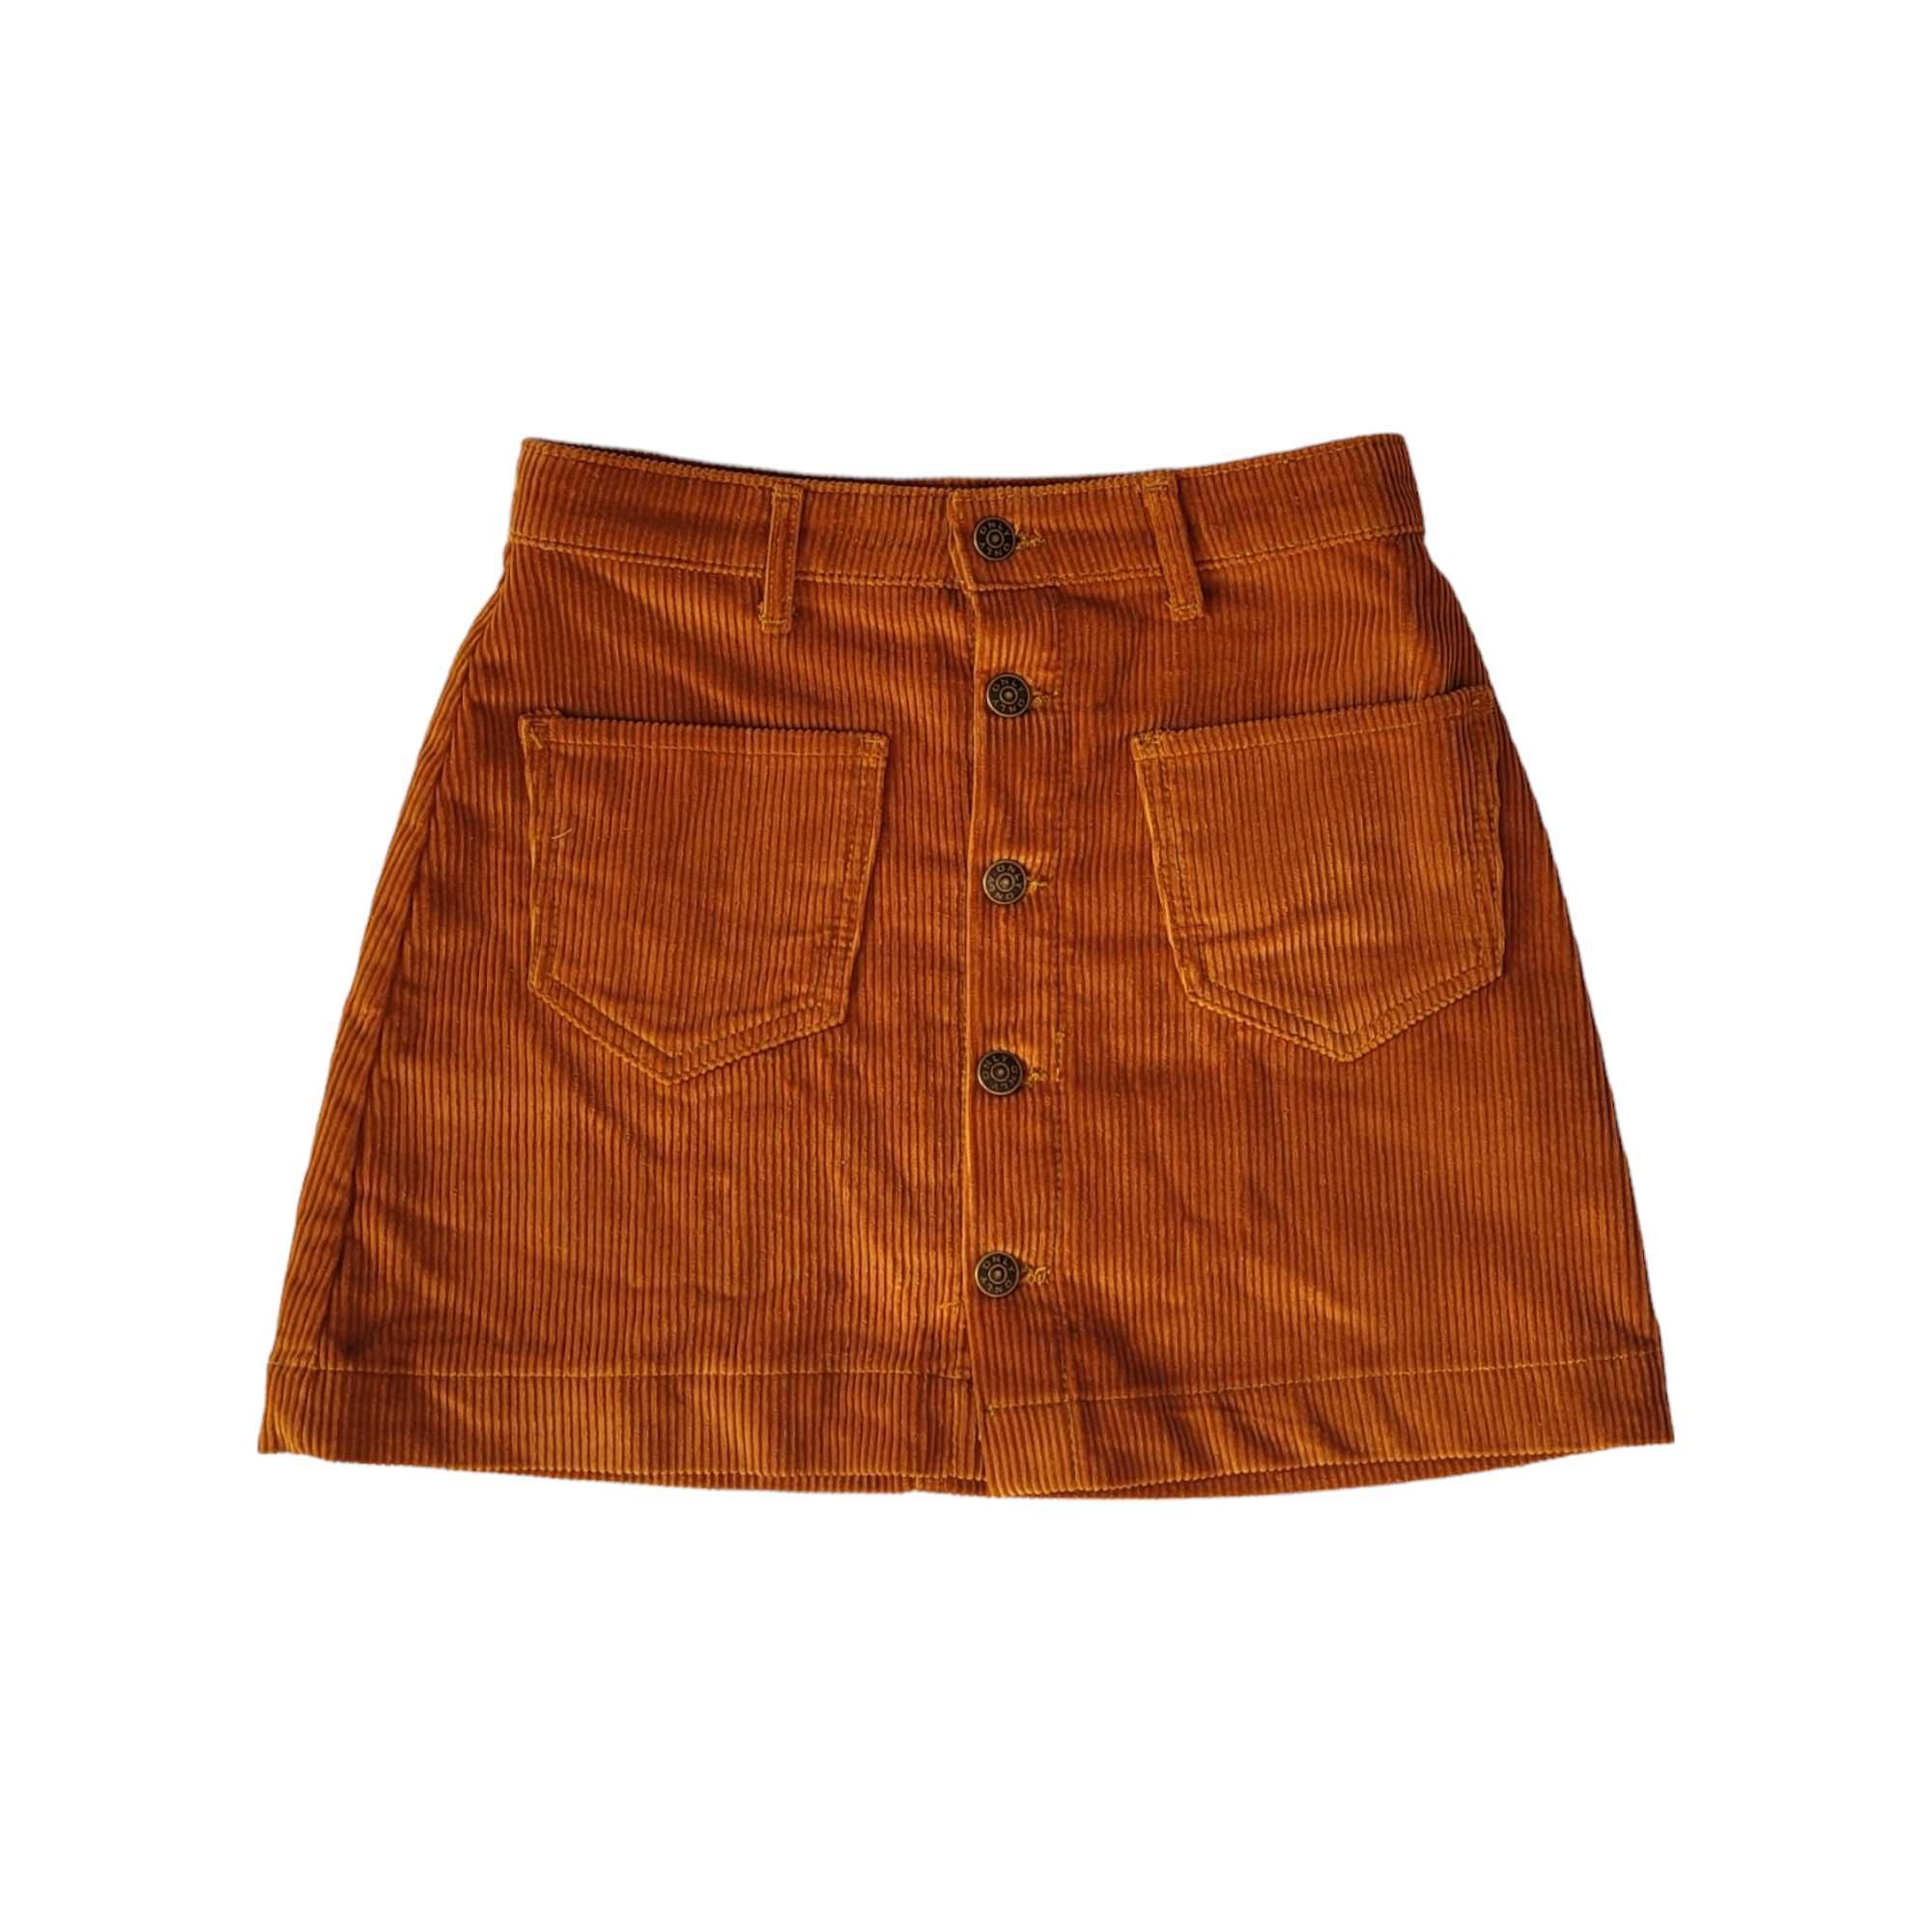 Sztruksowa spódnica mini z guzikami S Only 100% bawełna krótka retro